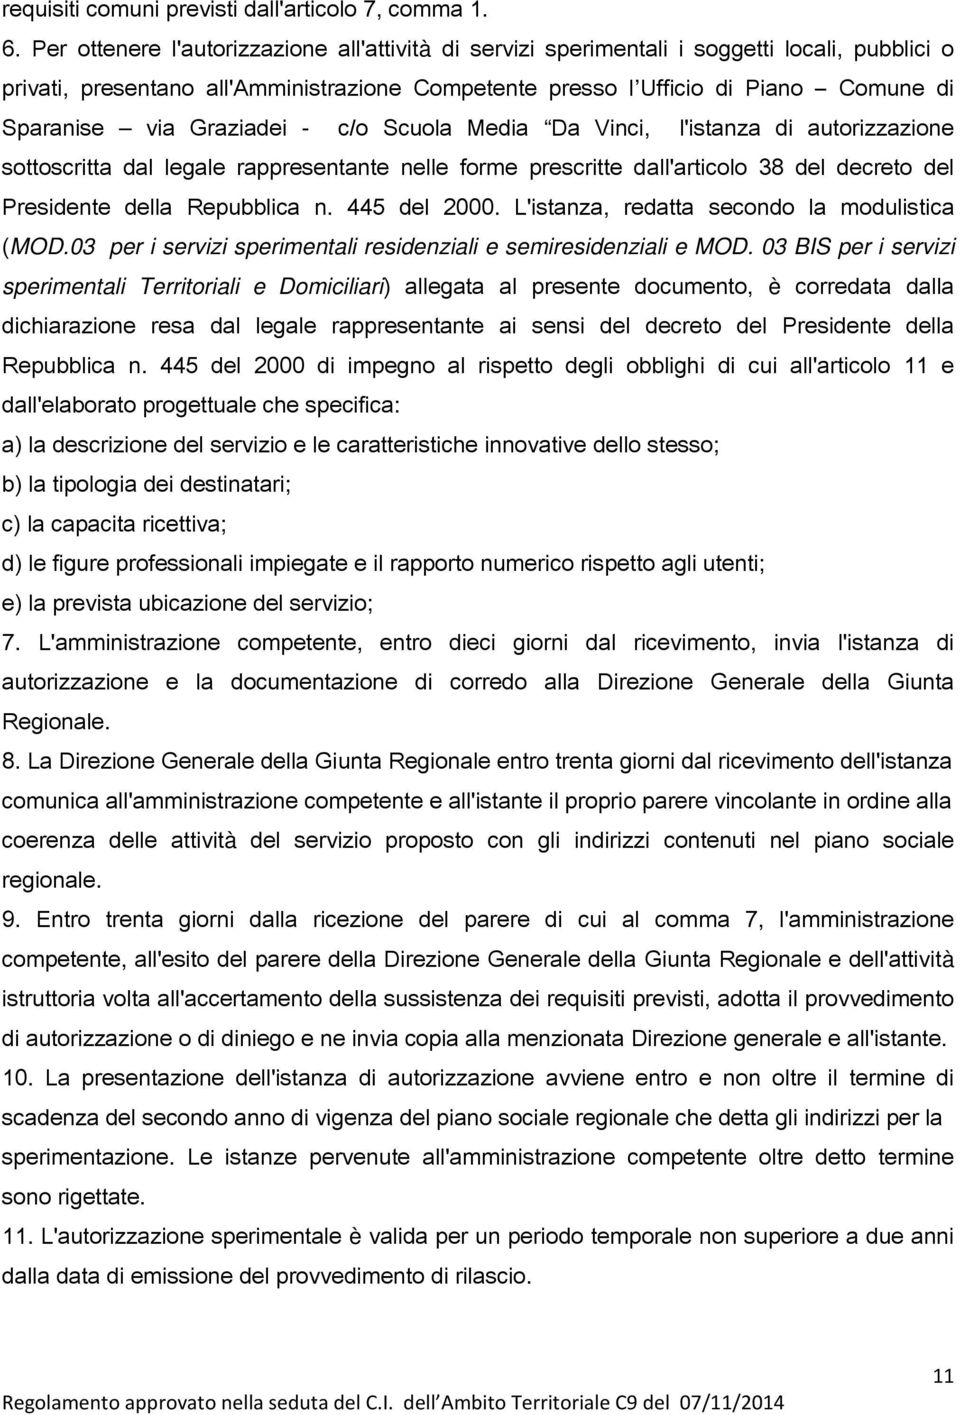 Graziadei - c/o Scuola Media Da Vinci, l'istanza di autorizzazione sottoscritta dal legale rappresentante nelle forme prescritte dall'articolo 38 del decreto del Presidente della Repubblica n.